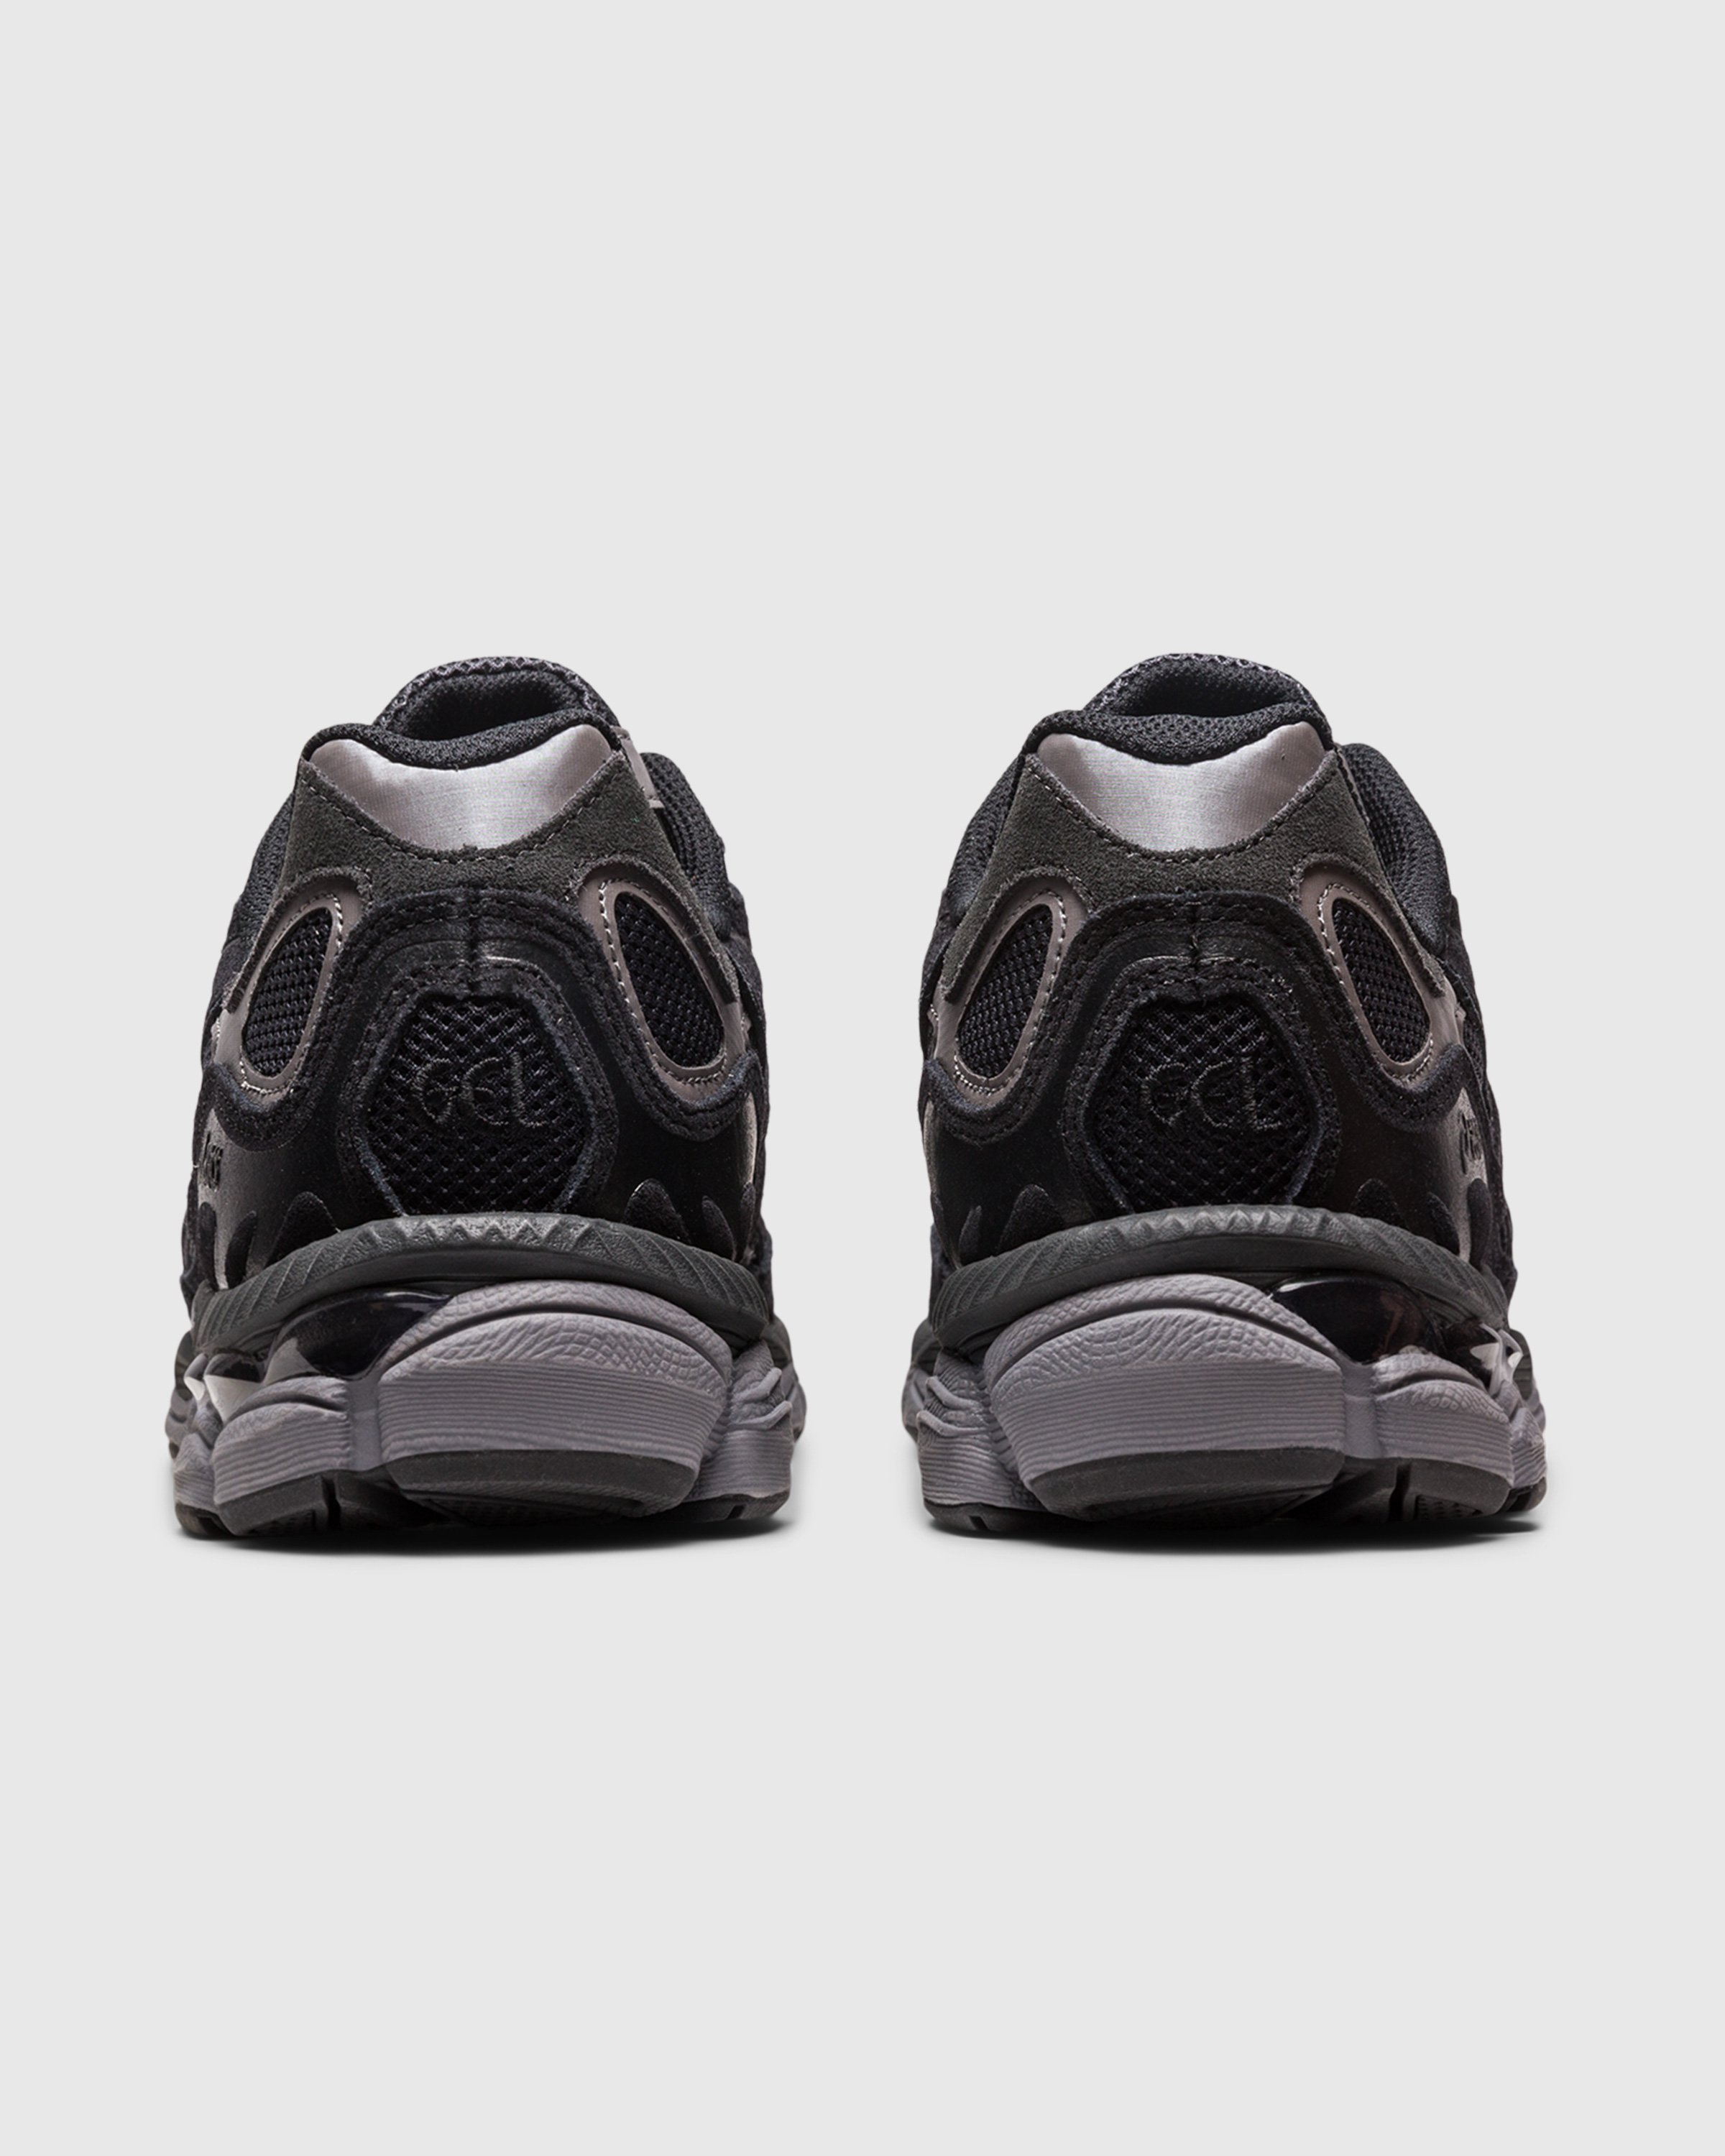 asics - GEL-NYC Graphite Grey/Black - Footwear - Black - Image 4